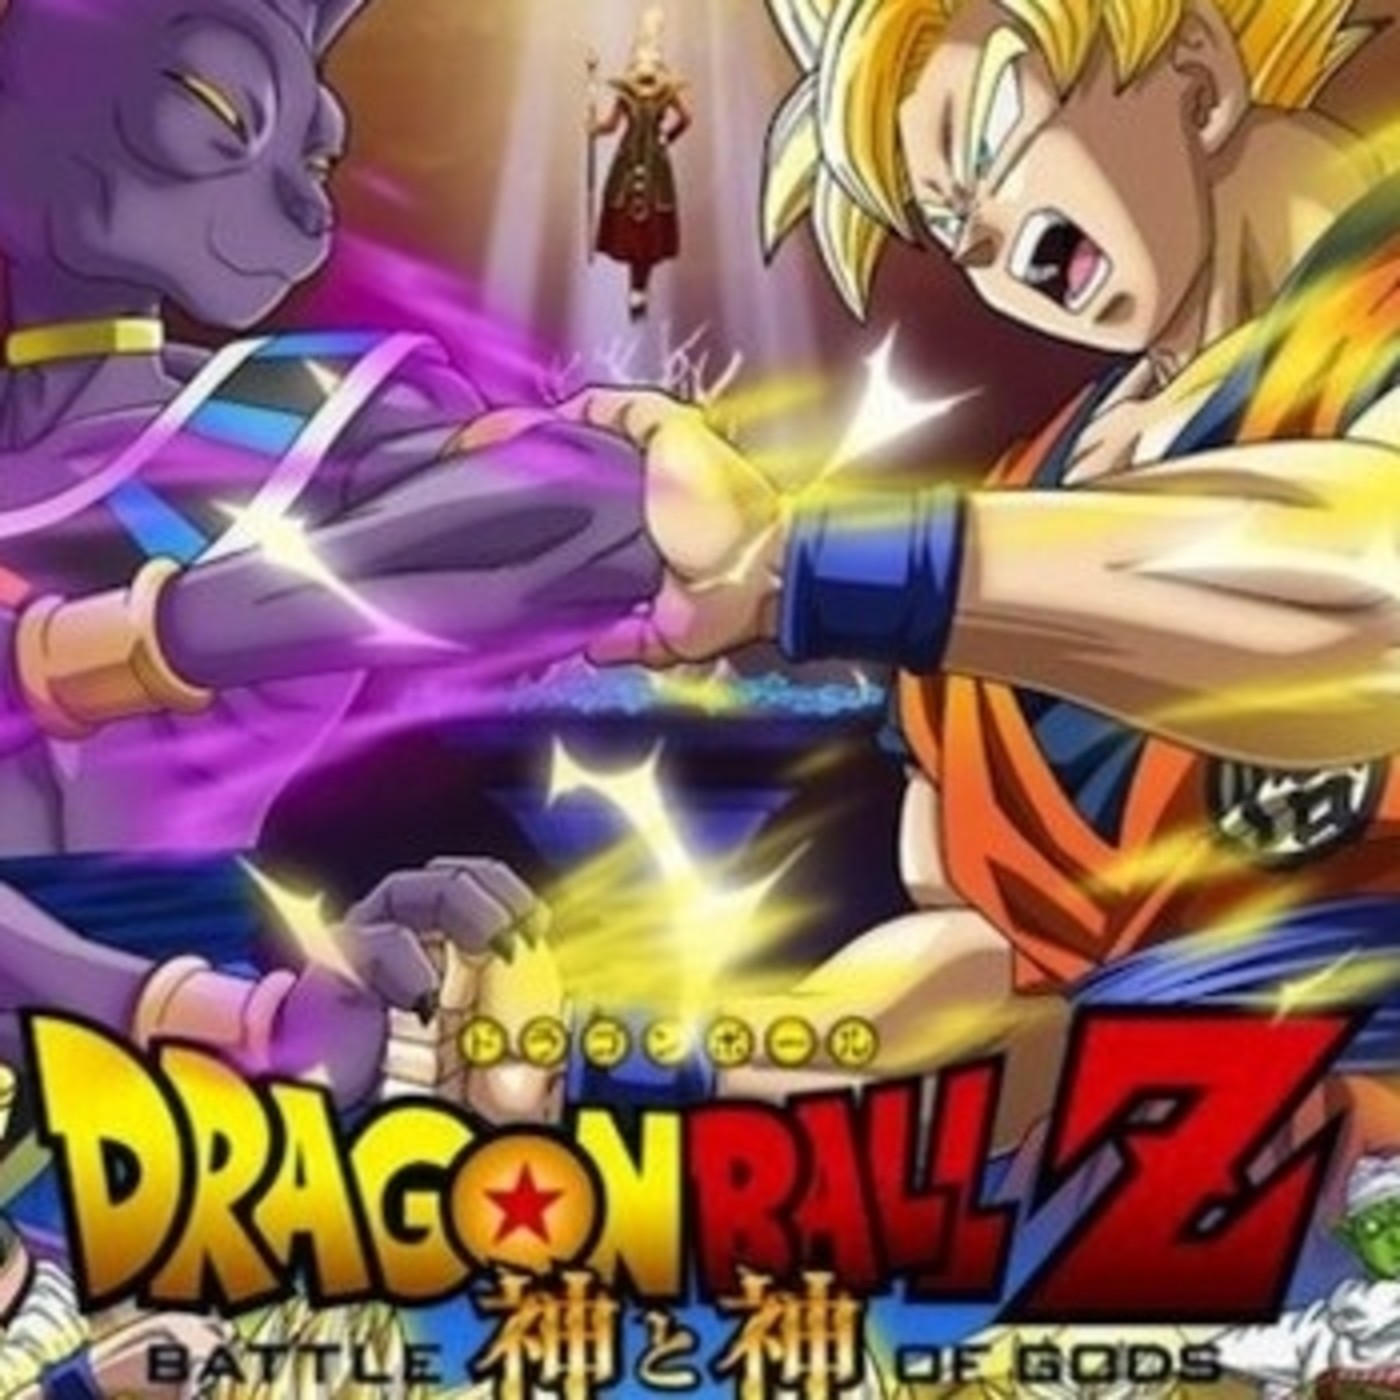 Gambatte Podcast | ’Dragon Ball Z: La Batalla de los Dioses’ en Boing